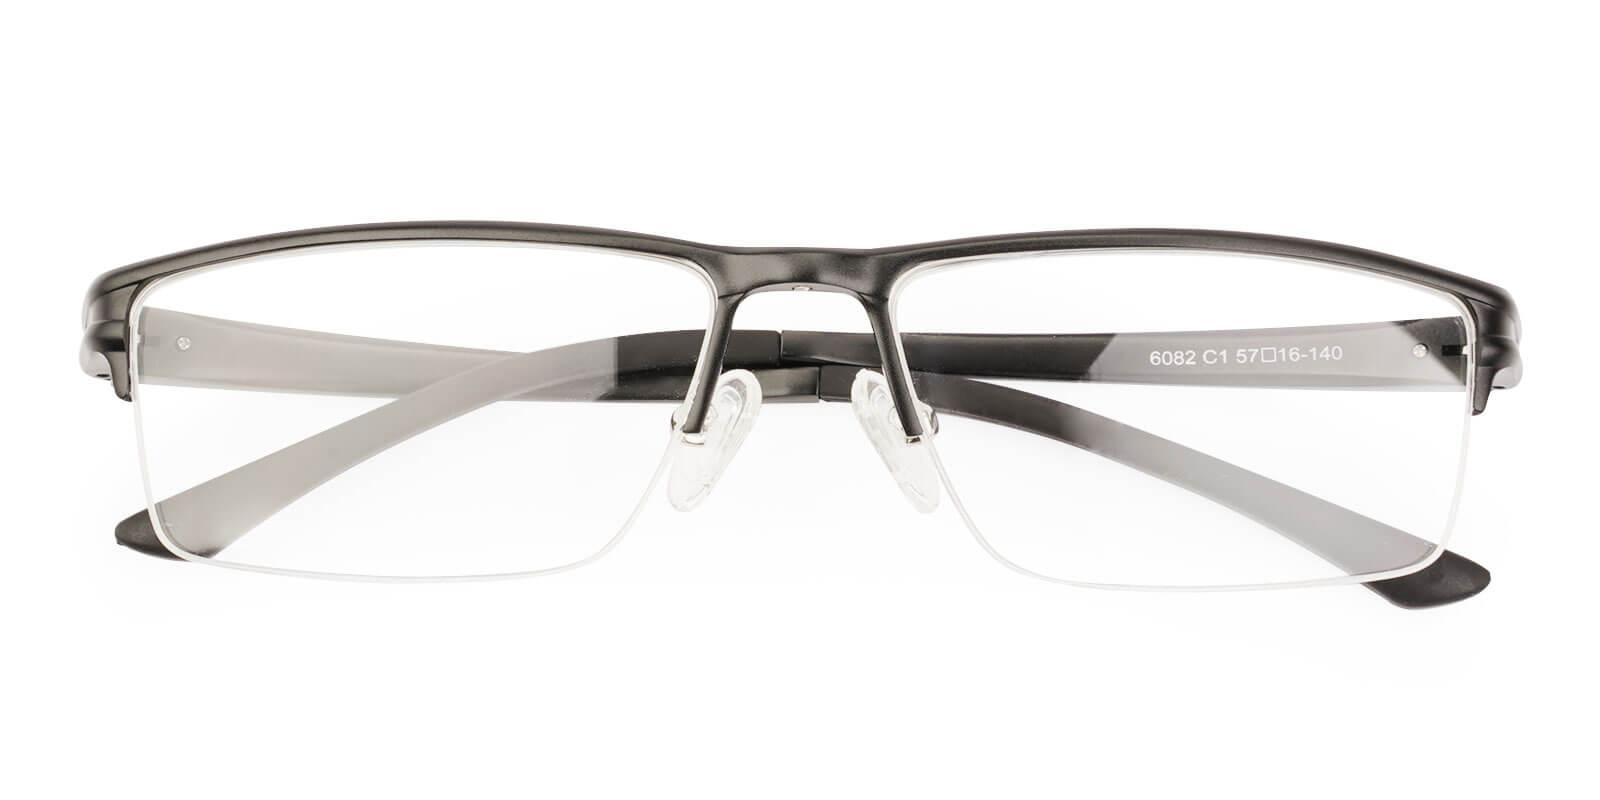 Seagull Black Metal NosePads , SportsGlasses , SpringHinges Frames from ABBE Glasses